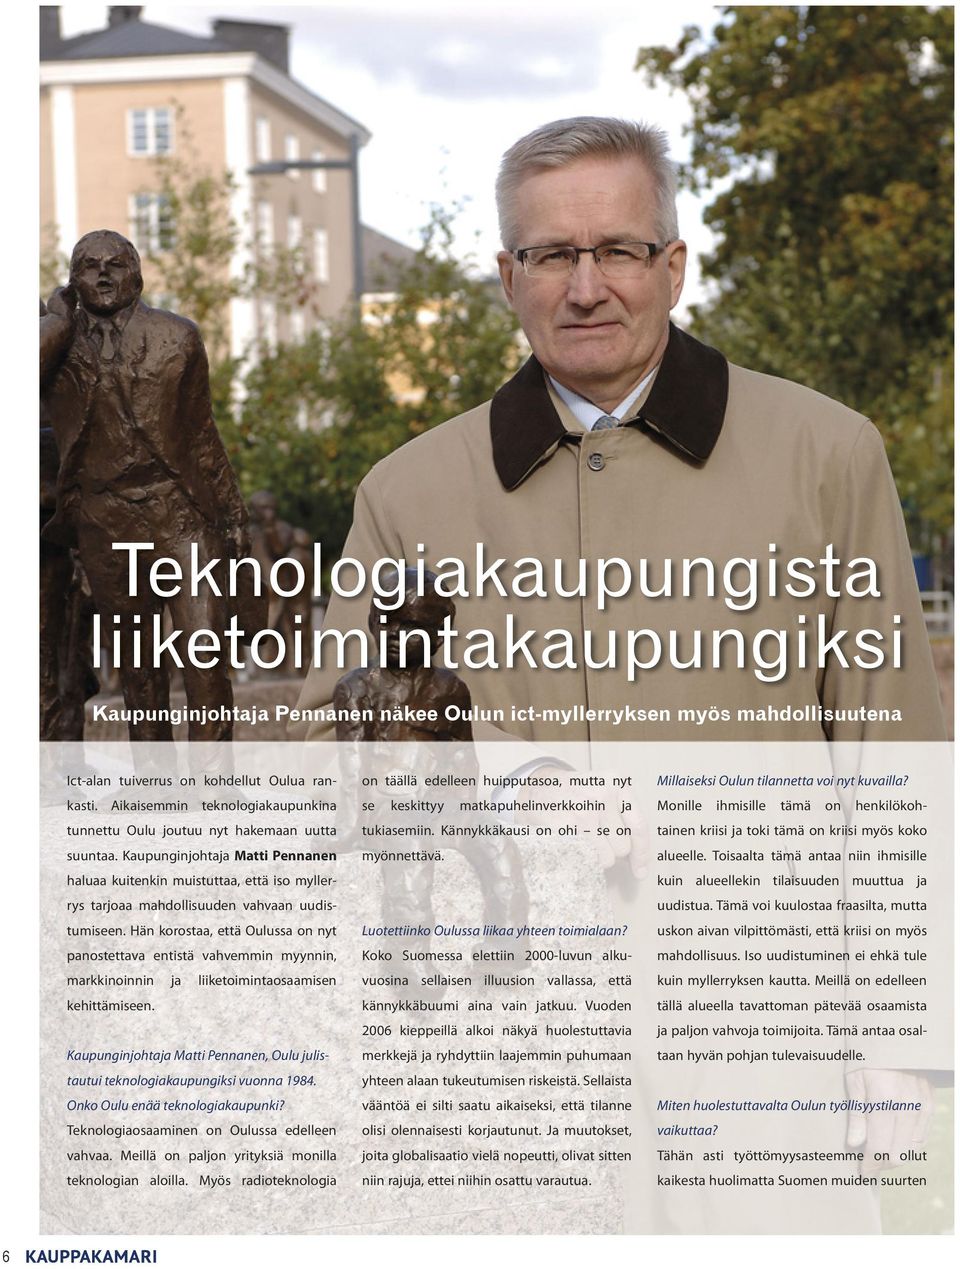 Kaupunginjohtaja Matti Pennanen haluaa kuitenkin muistuttaa, että iso myllerrys tarjoaa mahdollisuuden vahvaan uudistumiseen.